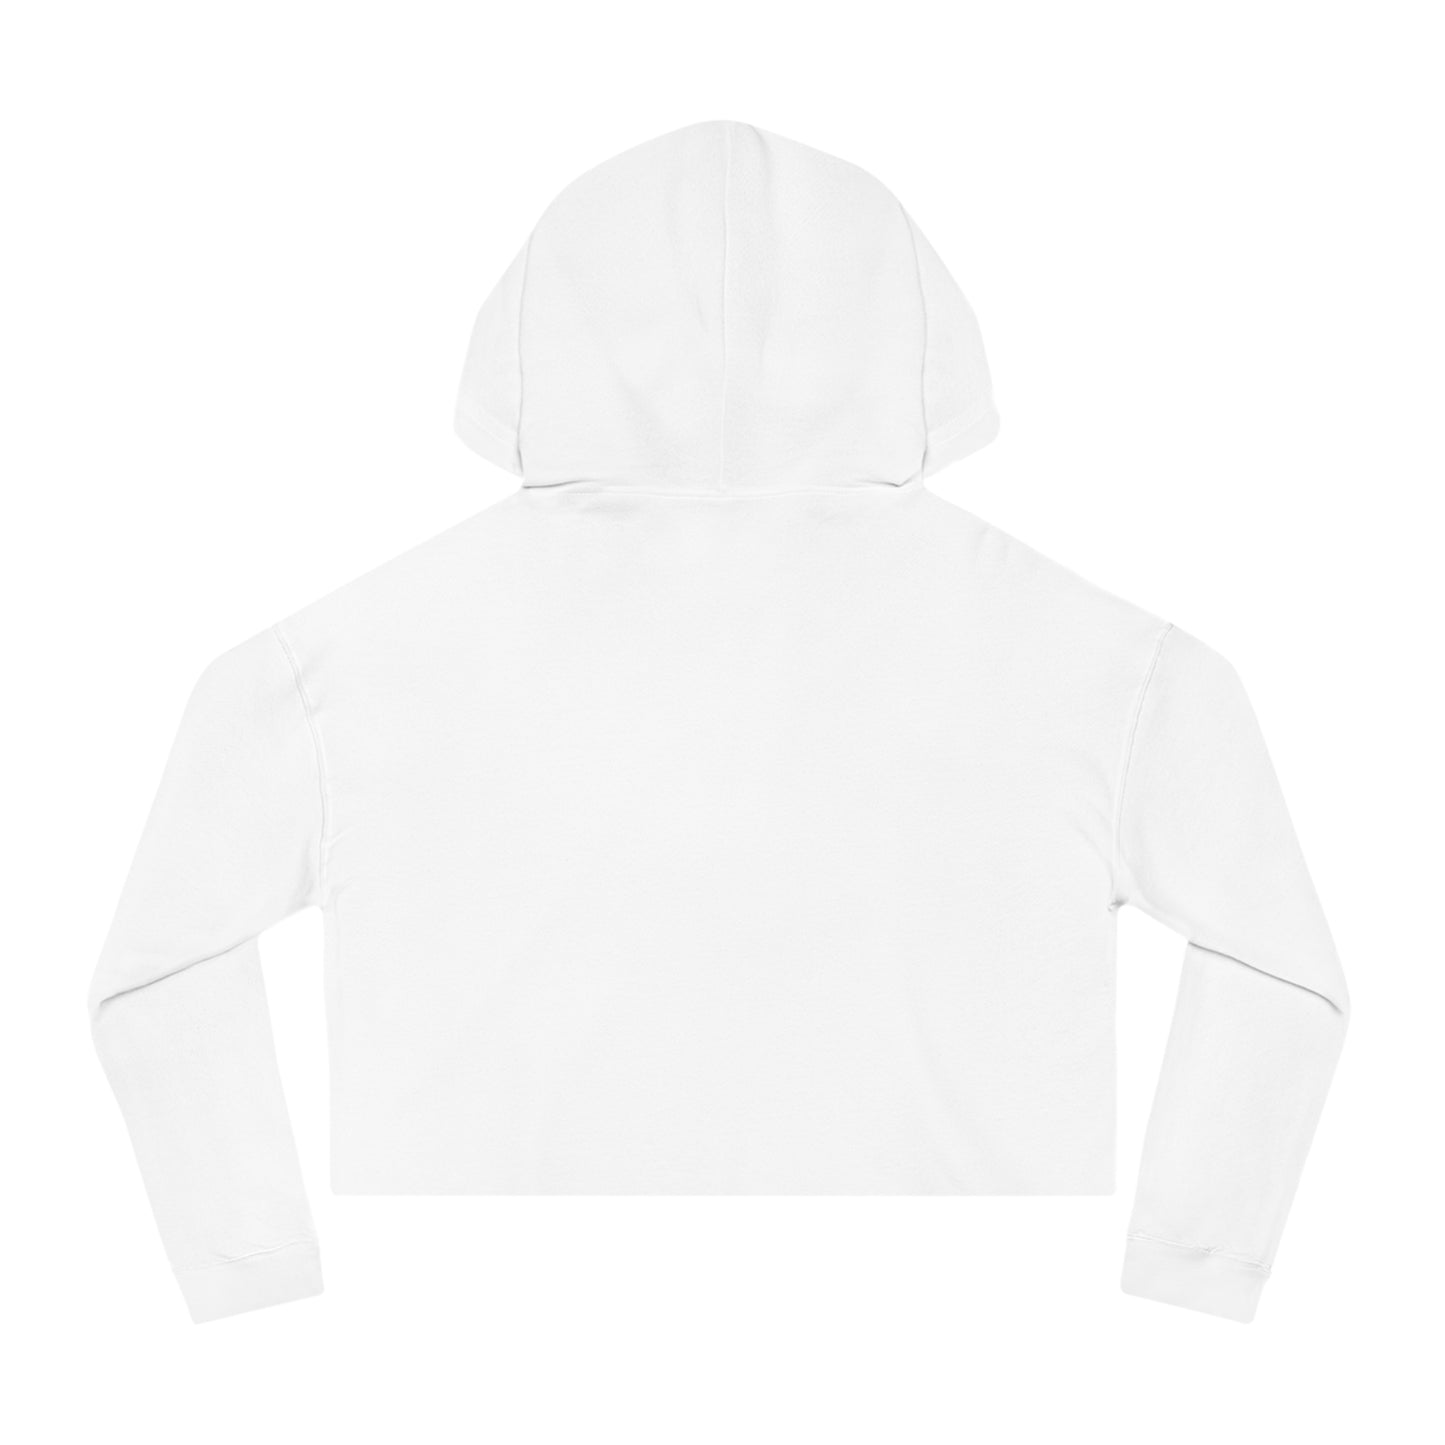 Valentine Sweatshirt, Premium Women’s Cropped Hooded Sweatshirt, Valentine Gift for Her